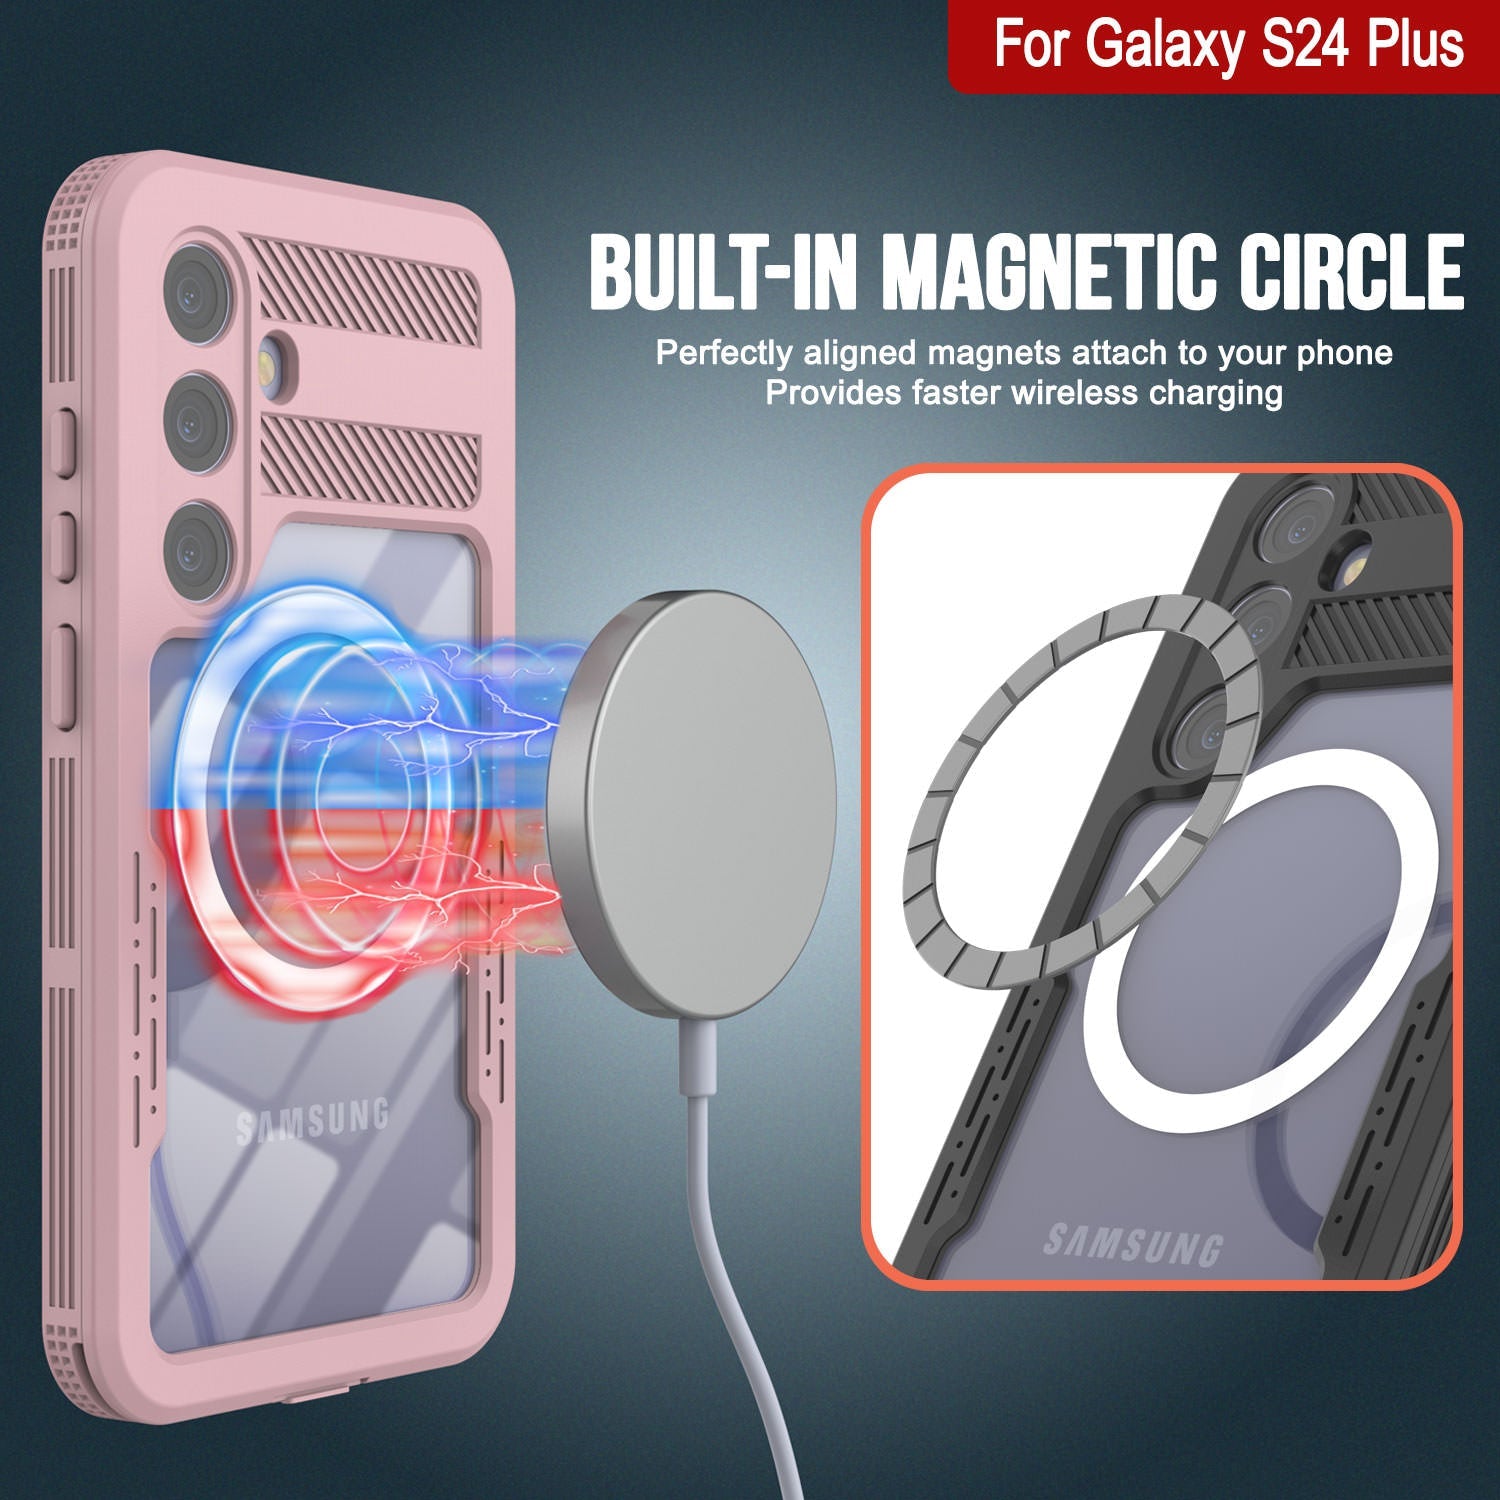 Galaxy S24+ Plus Waterproof Case [Alpine 2.0 Series] [Slim Fit] [IP68 Certified] [Shockproof] [Pink]